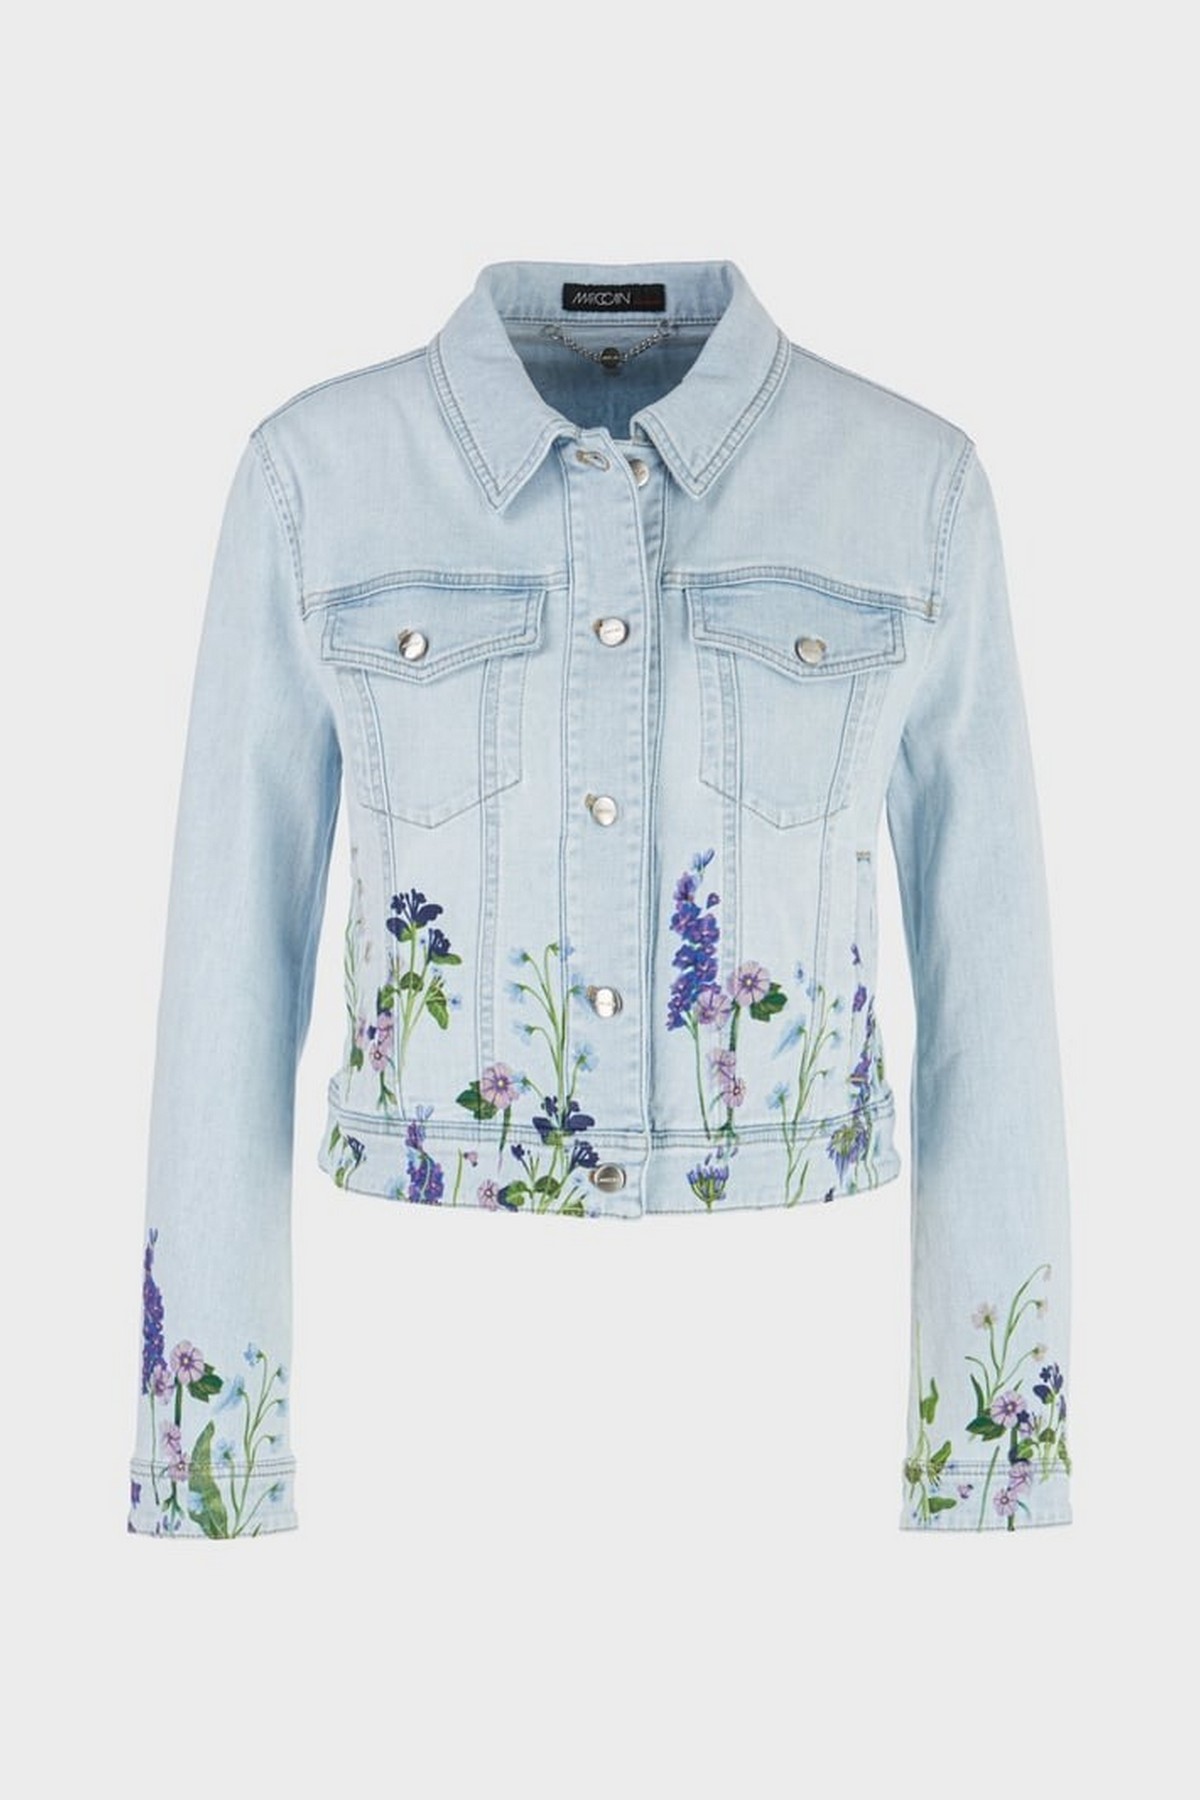 Vest jeans summer flower in de kleur lichtblauw van het merk Marc Cain Collections